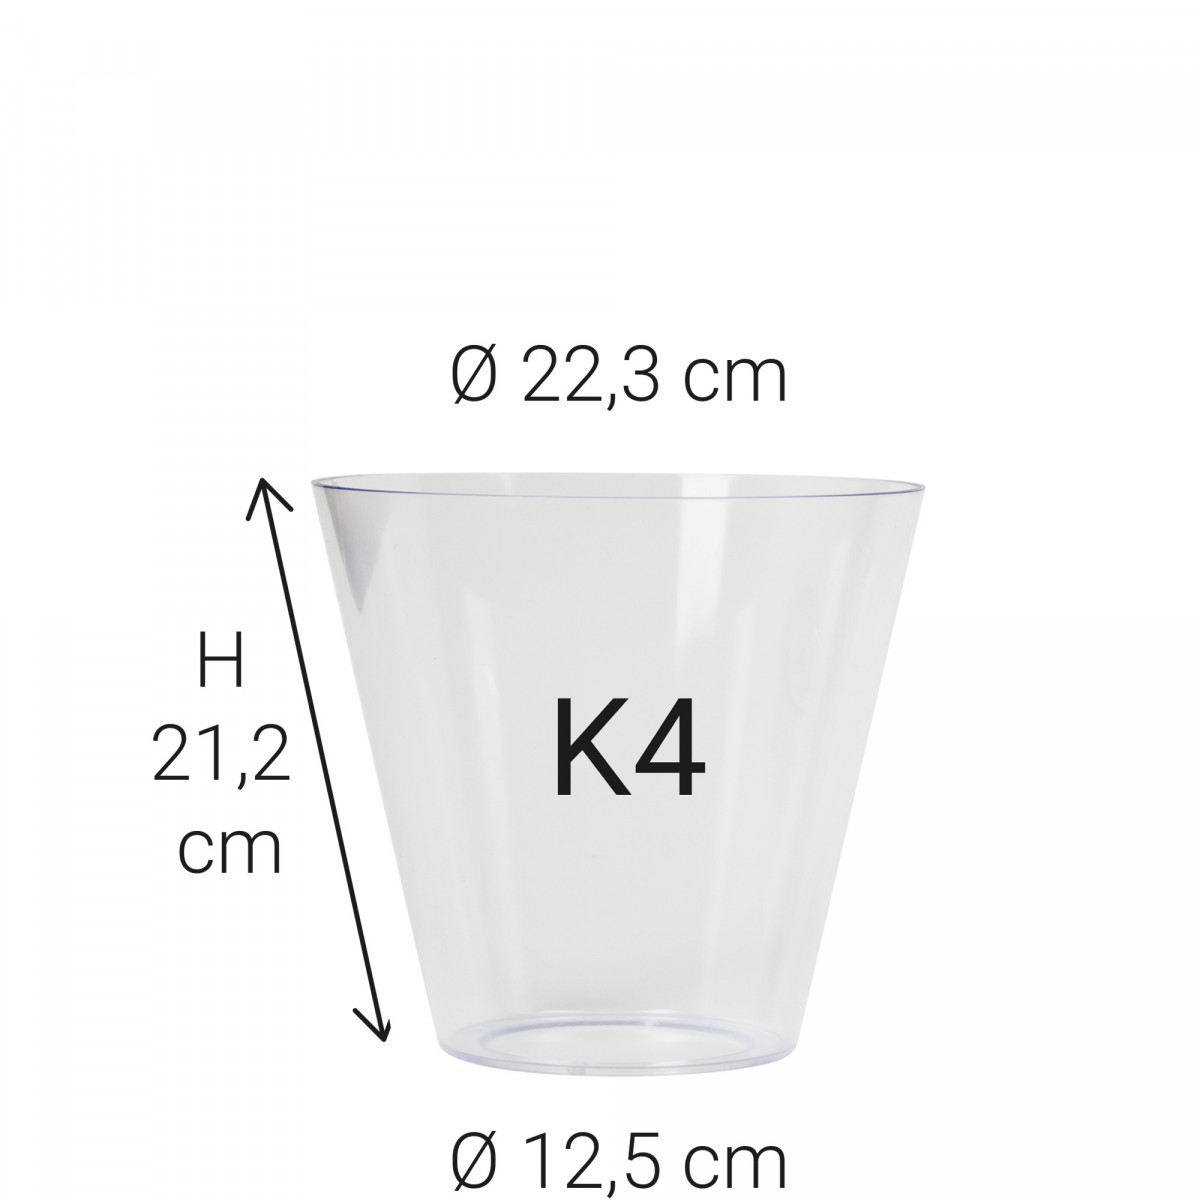 Echt glas K4